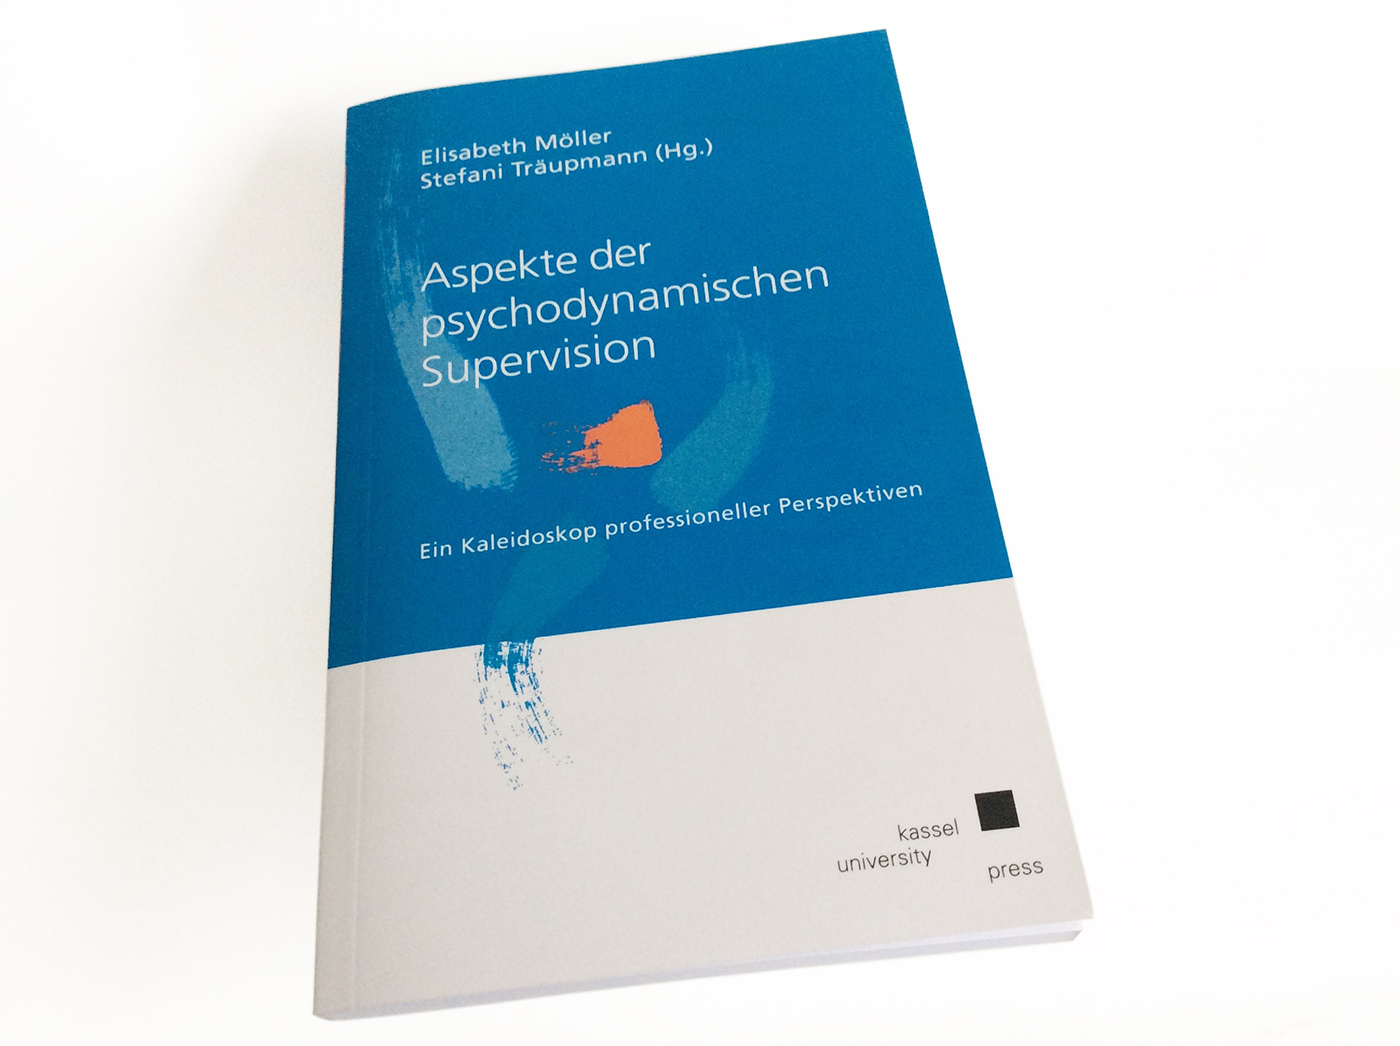 Das Buch Aspekte der psychodynamischen Supervision